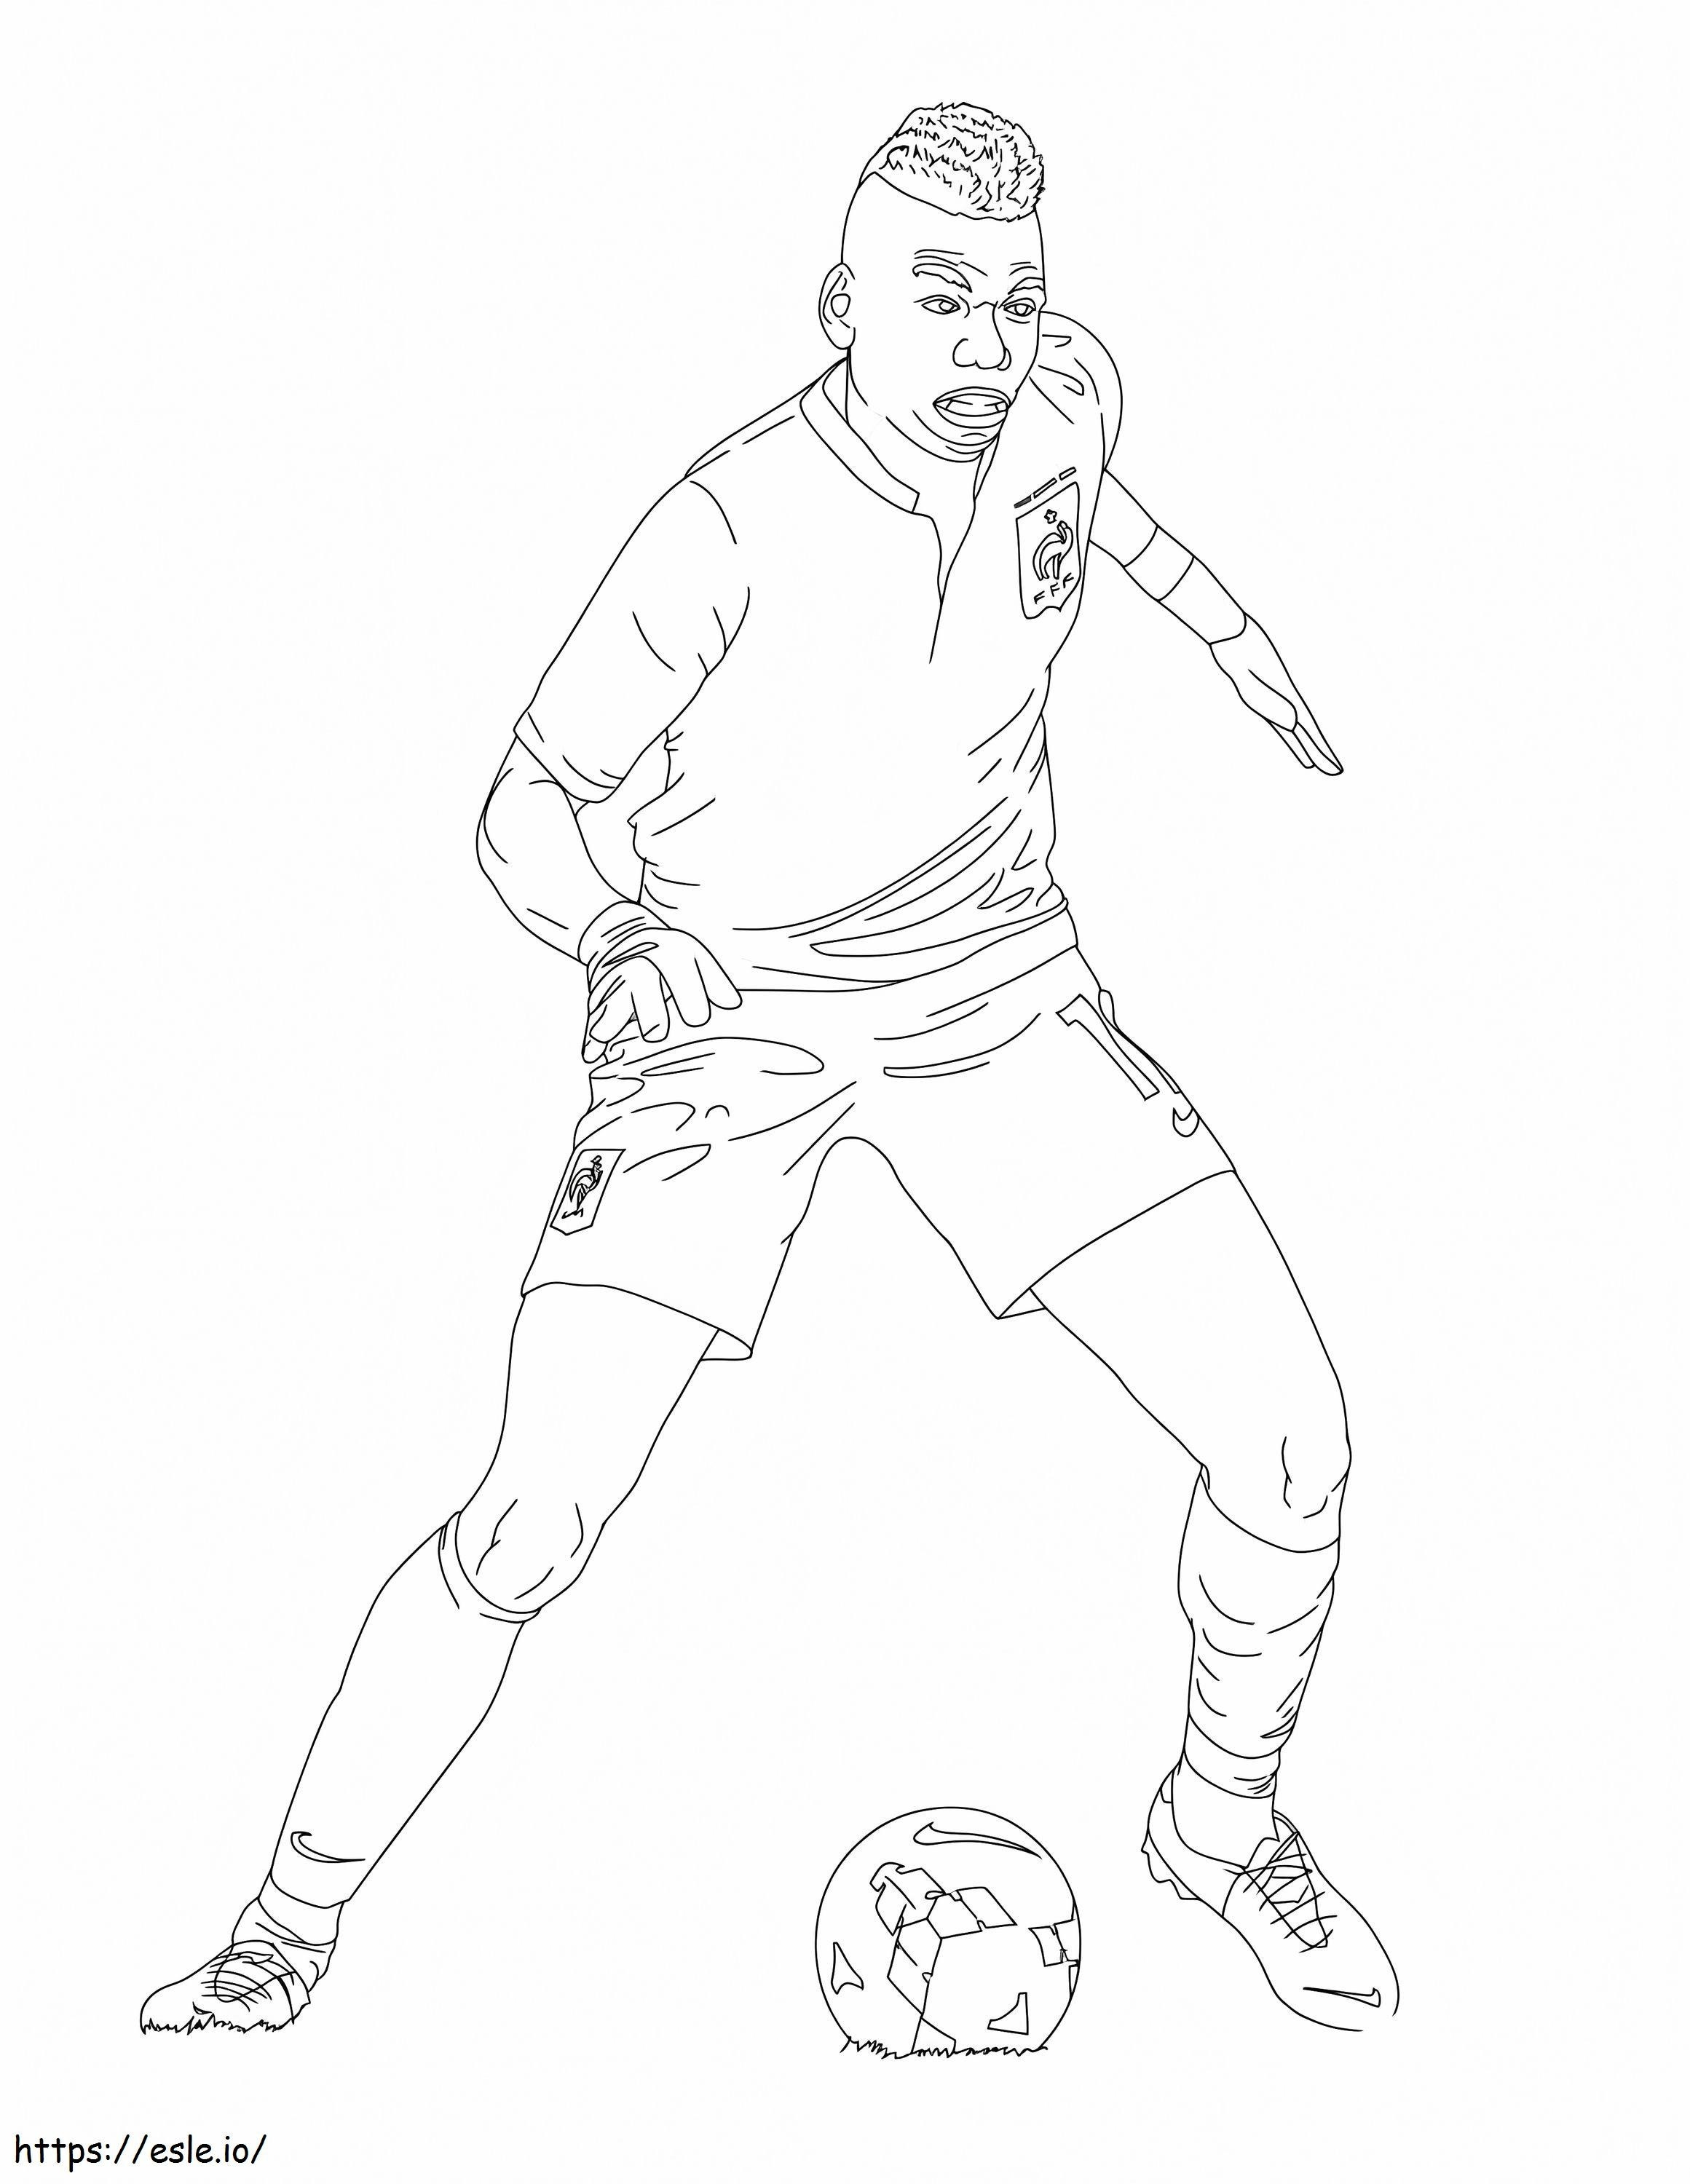 Paul Pogba jugando al fútbol para colorear